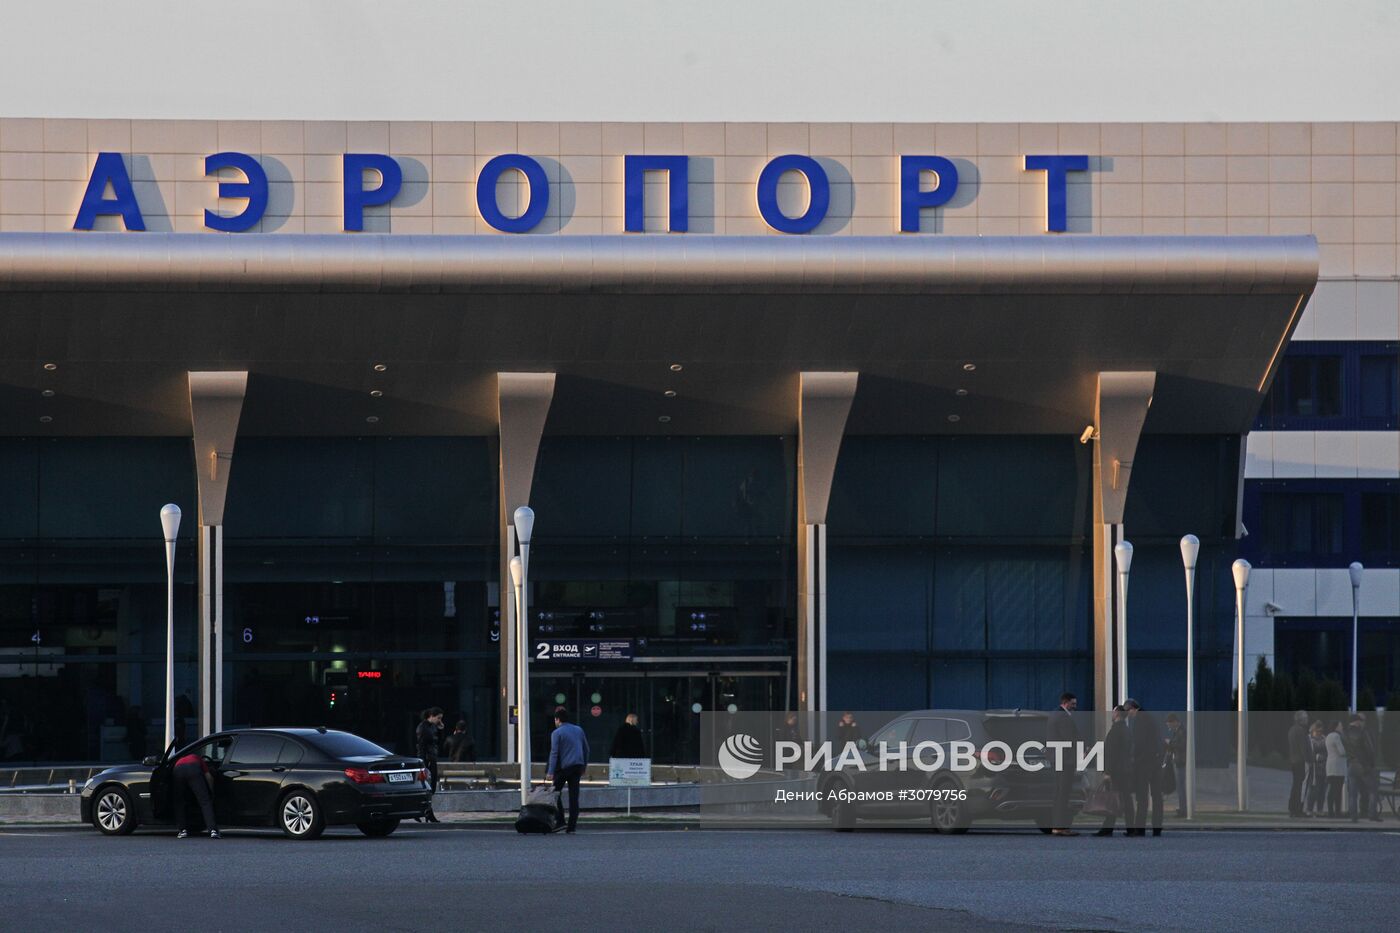 Аэропорт "Минеральные воды" в Ставропольском крае